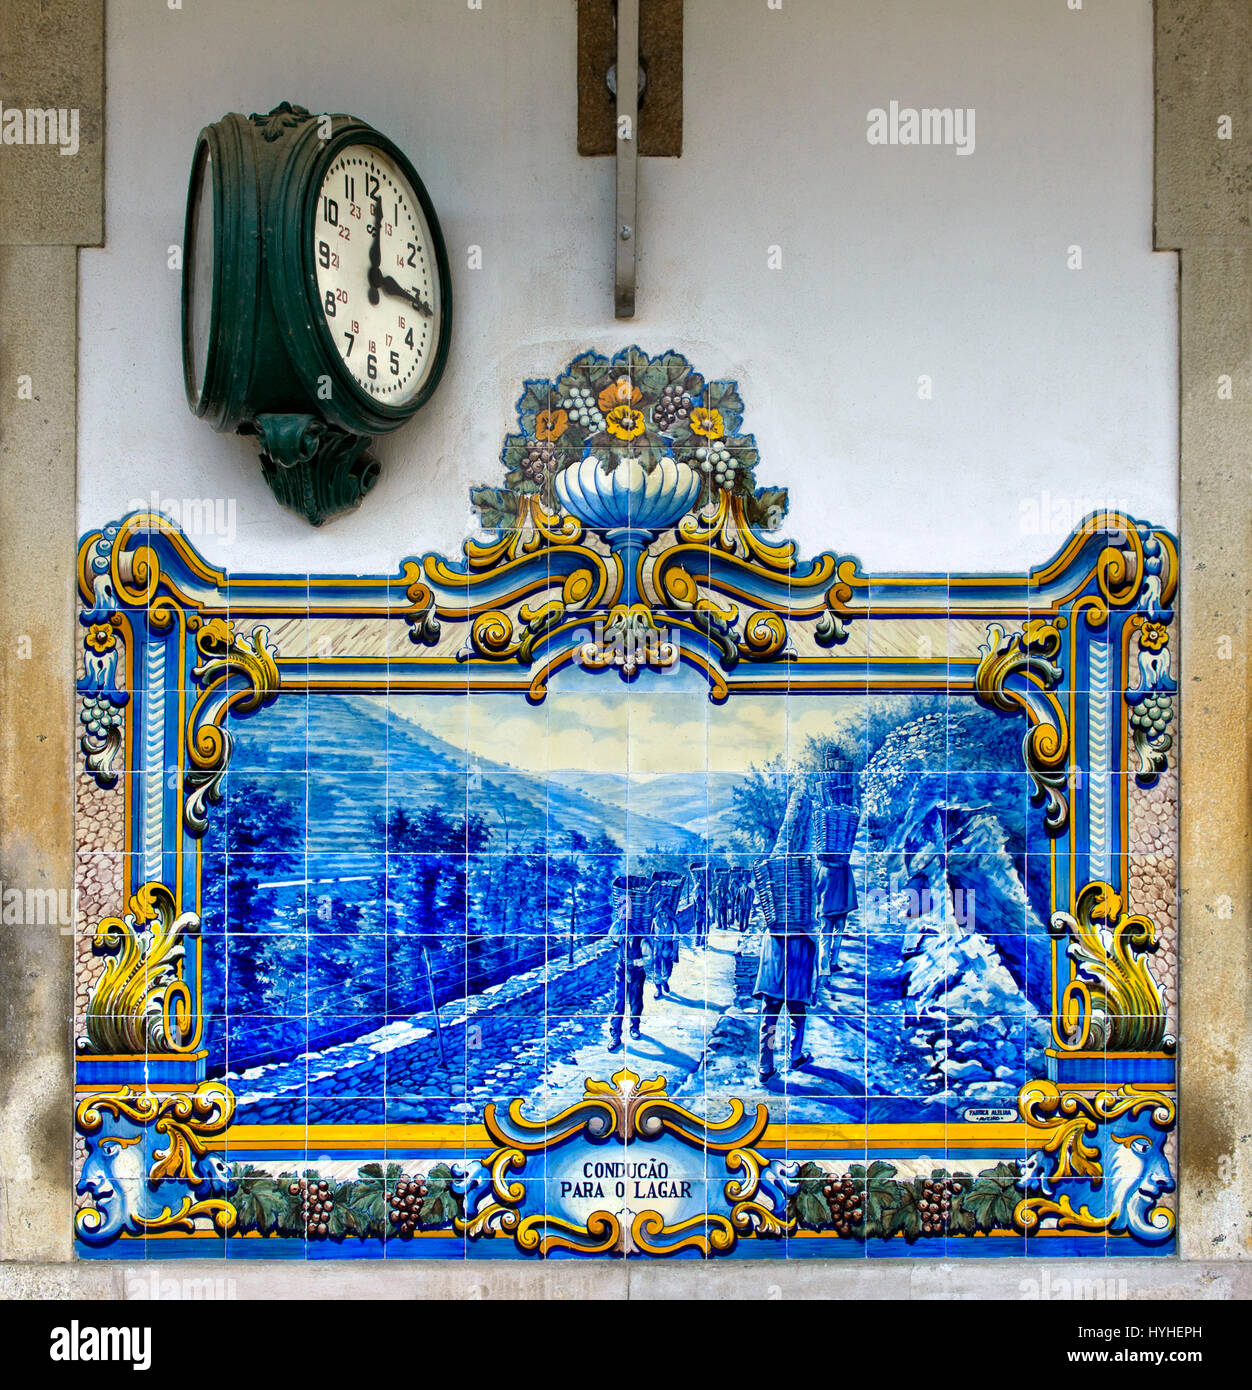 Orologio di stazione e dipinte a mano e le piastrelle di ceramica, azulejos, a Pinhao stazione ferroviaria raffiguranti scene della vendemmia in la regione del Douro, Pinhao, Foto Stock